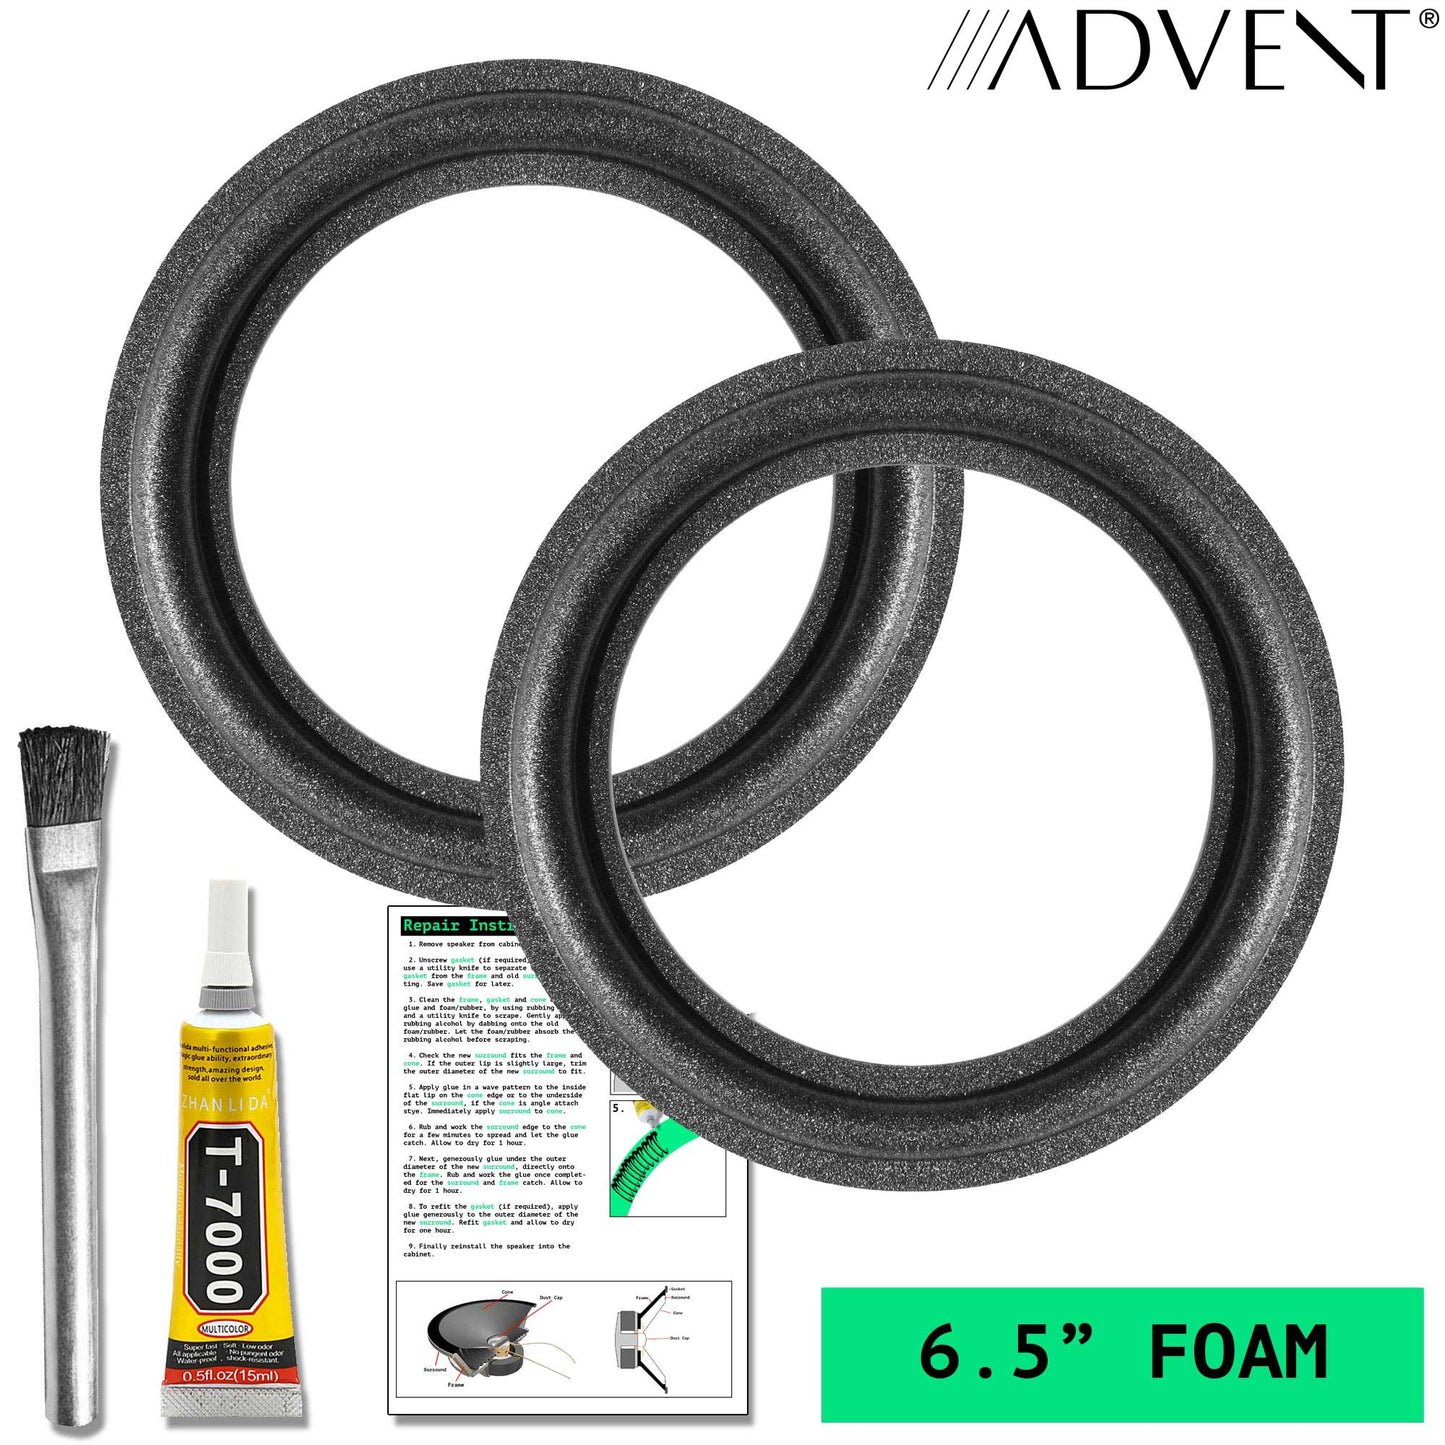 Advent Baby Advent II, Mini Advents, 6.5" Foam Repair Kit